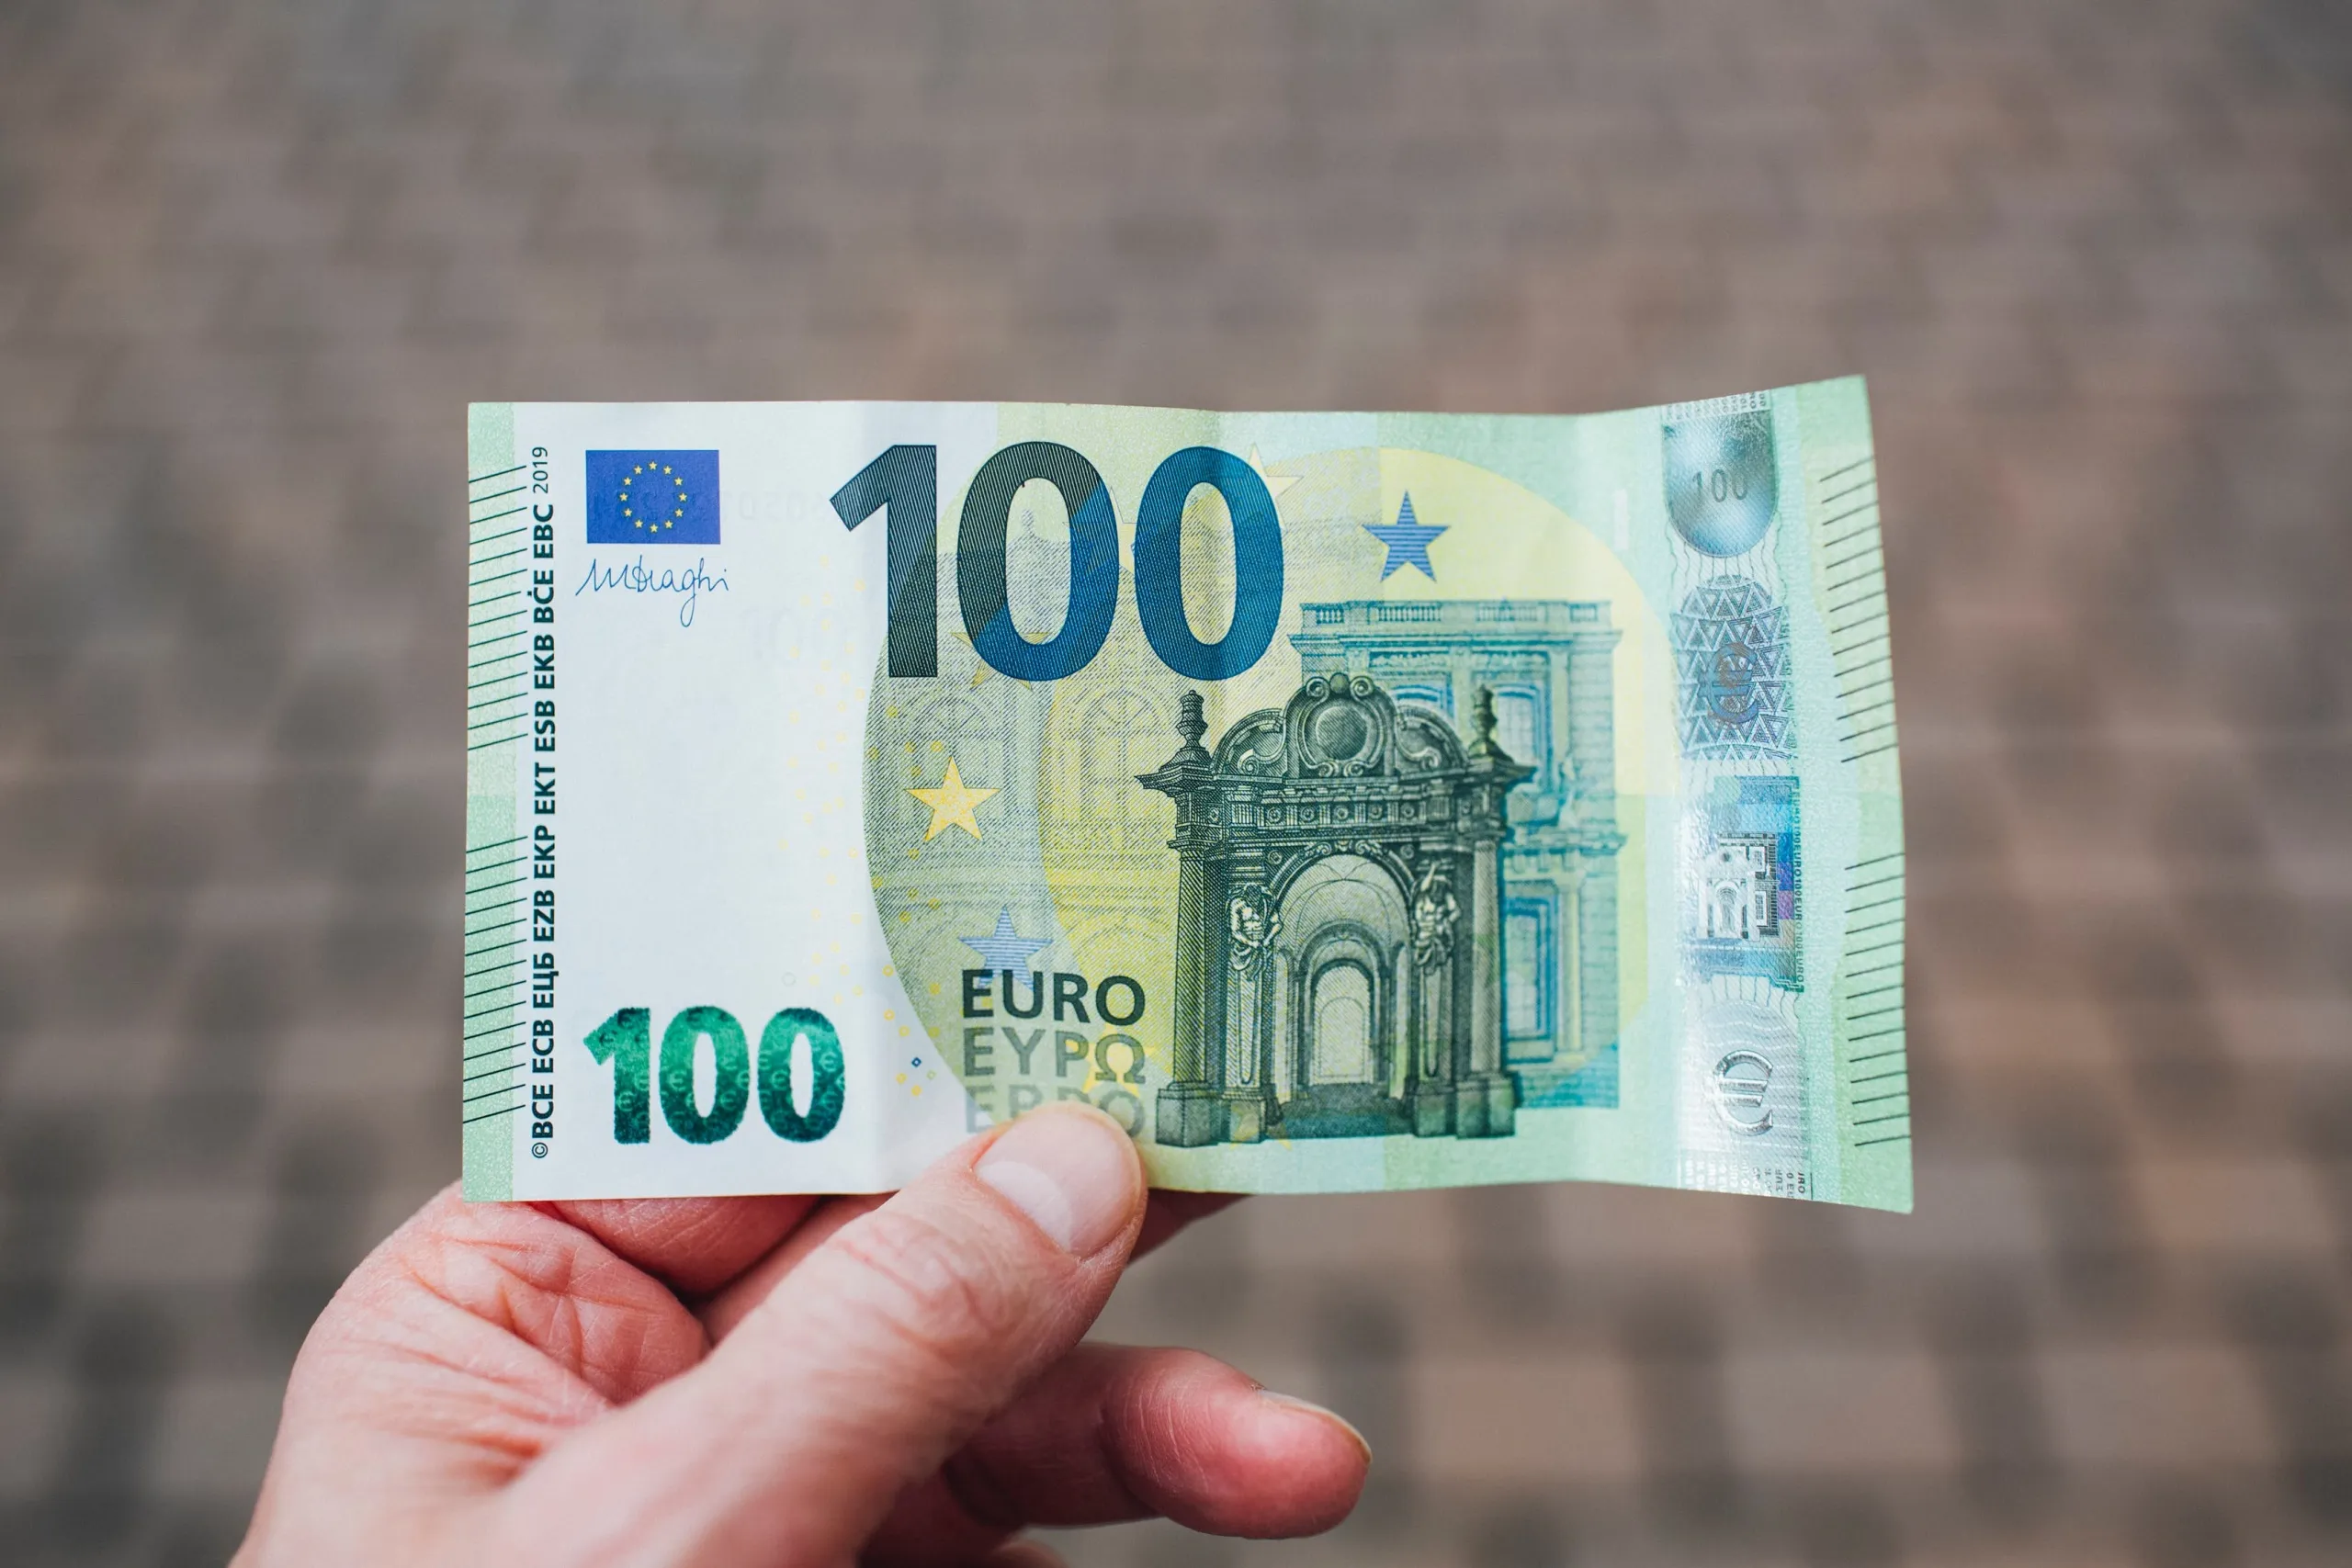 Euro shënon rritje të fortë në kursin e këmbimit me Lekun 